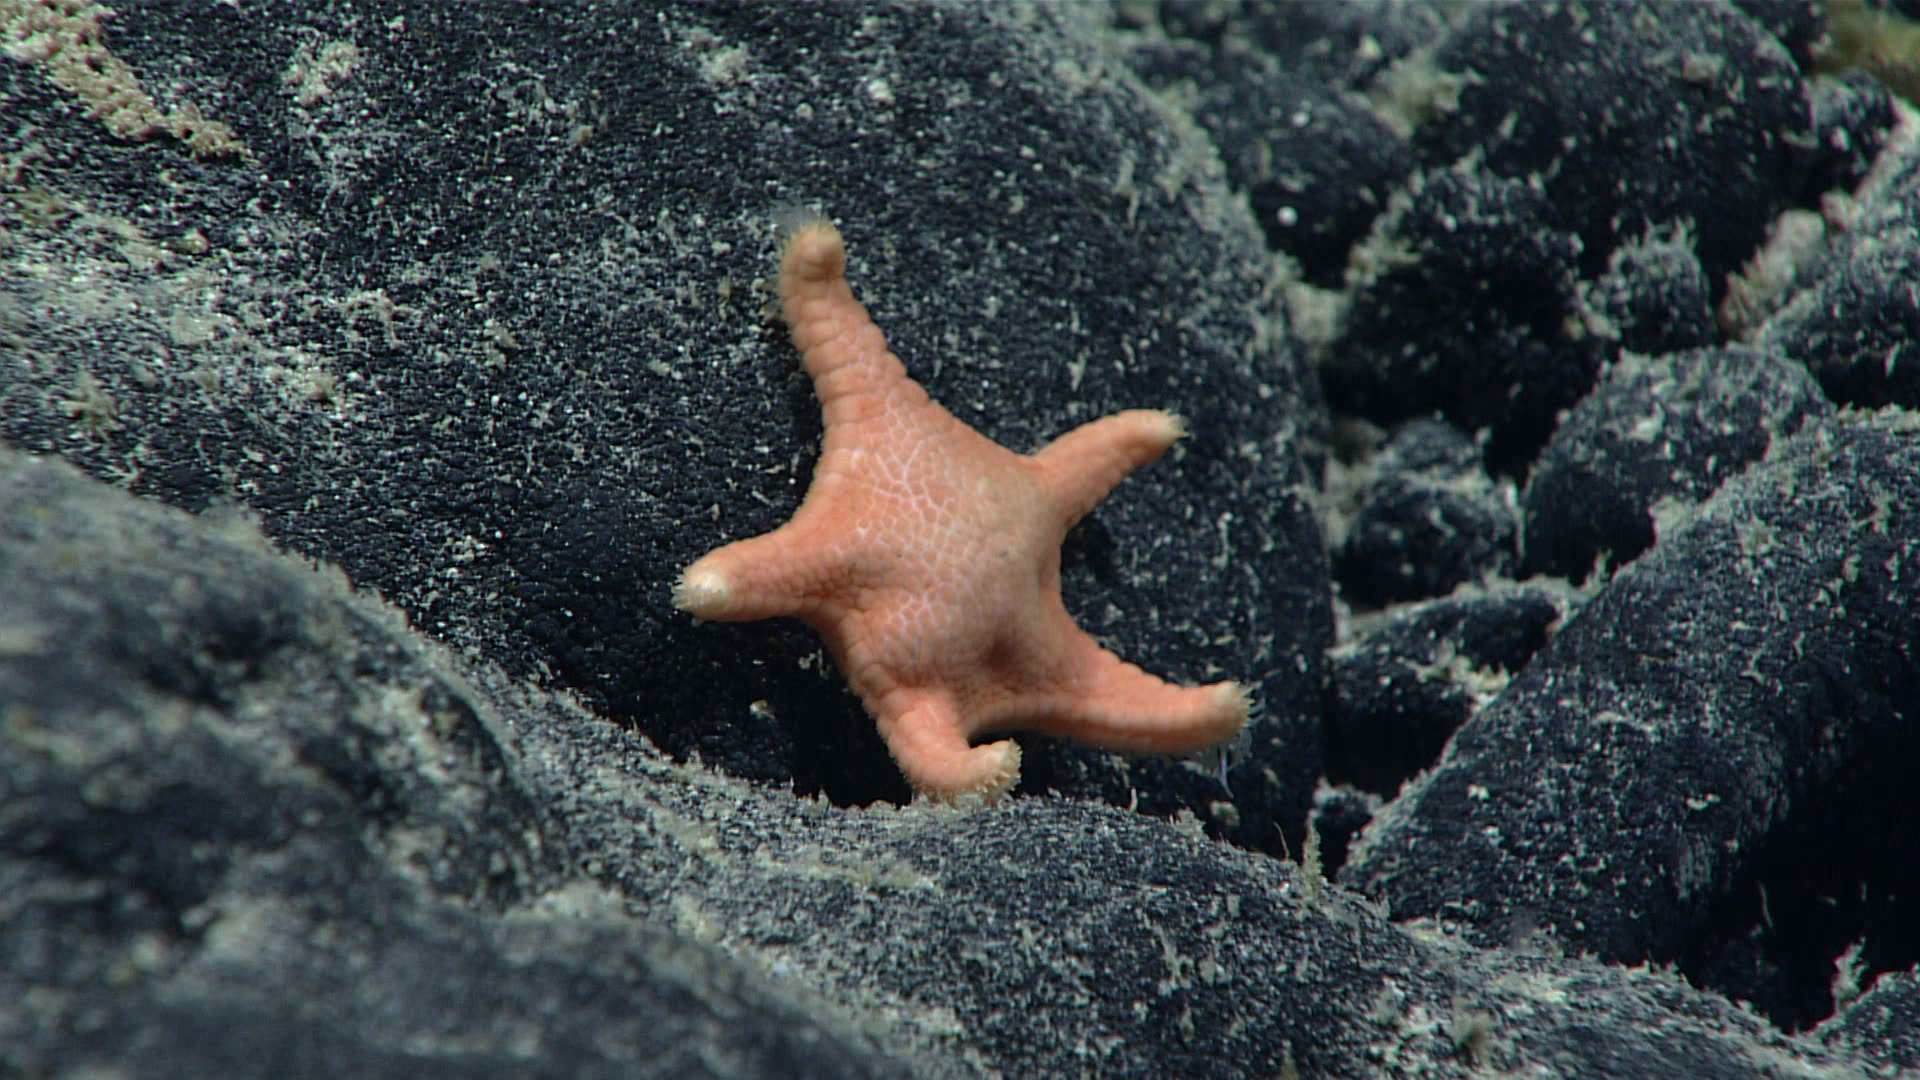 Sea stars  Discover Animals